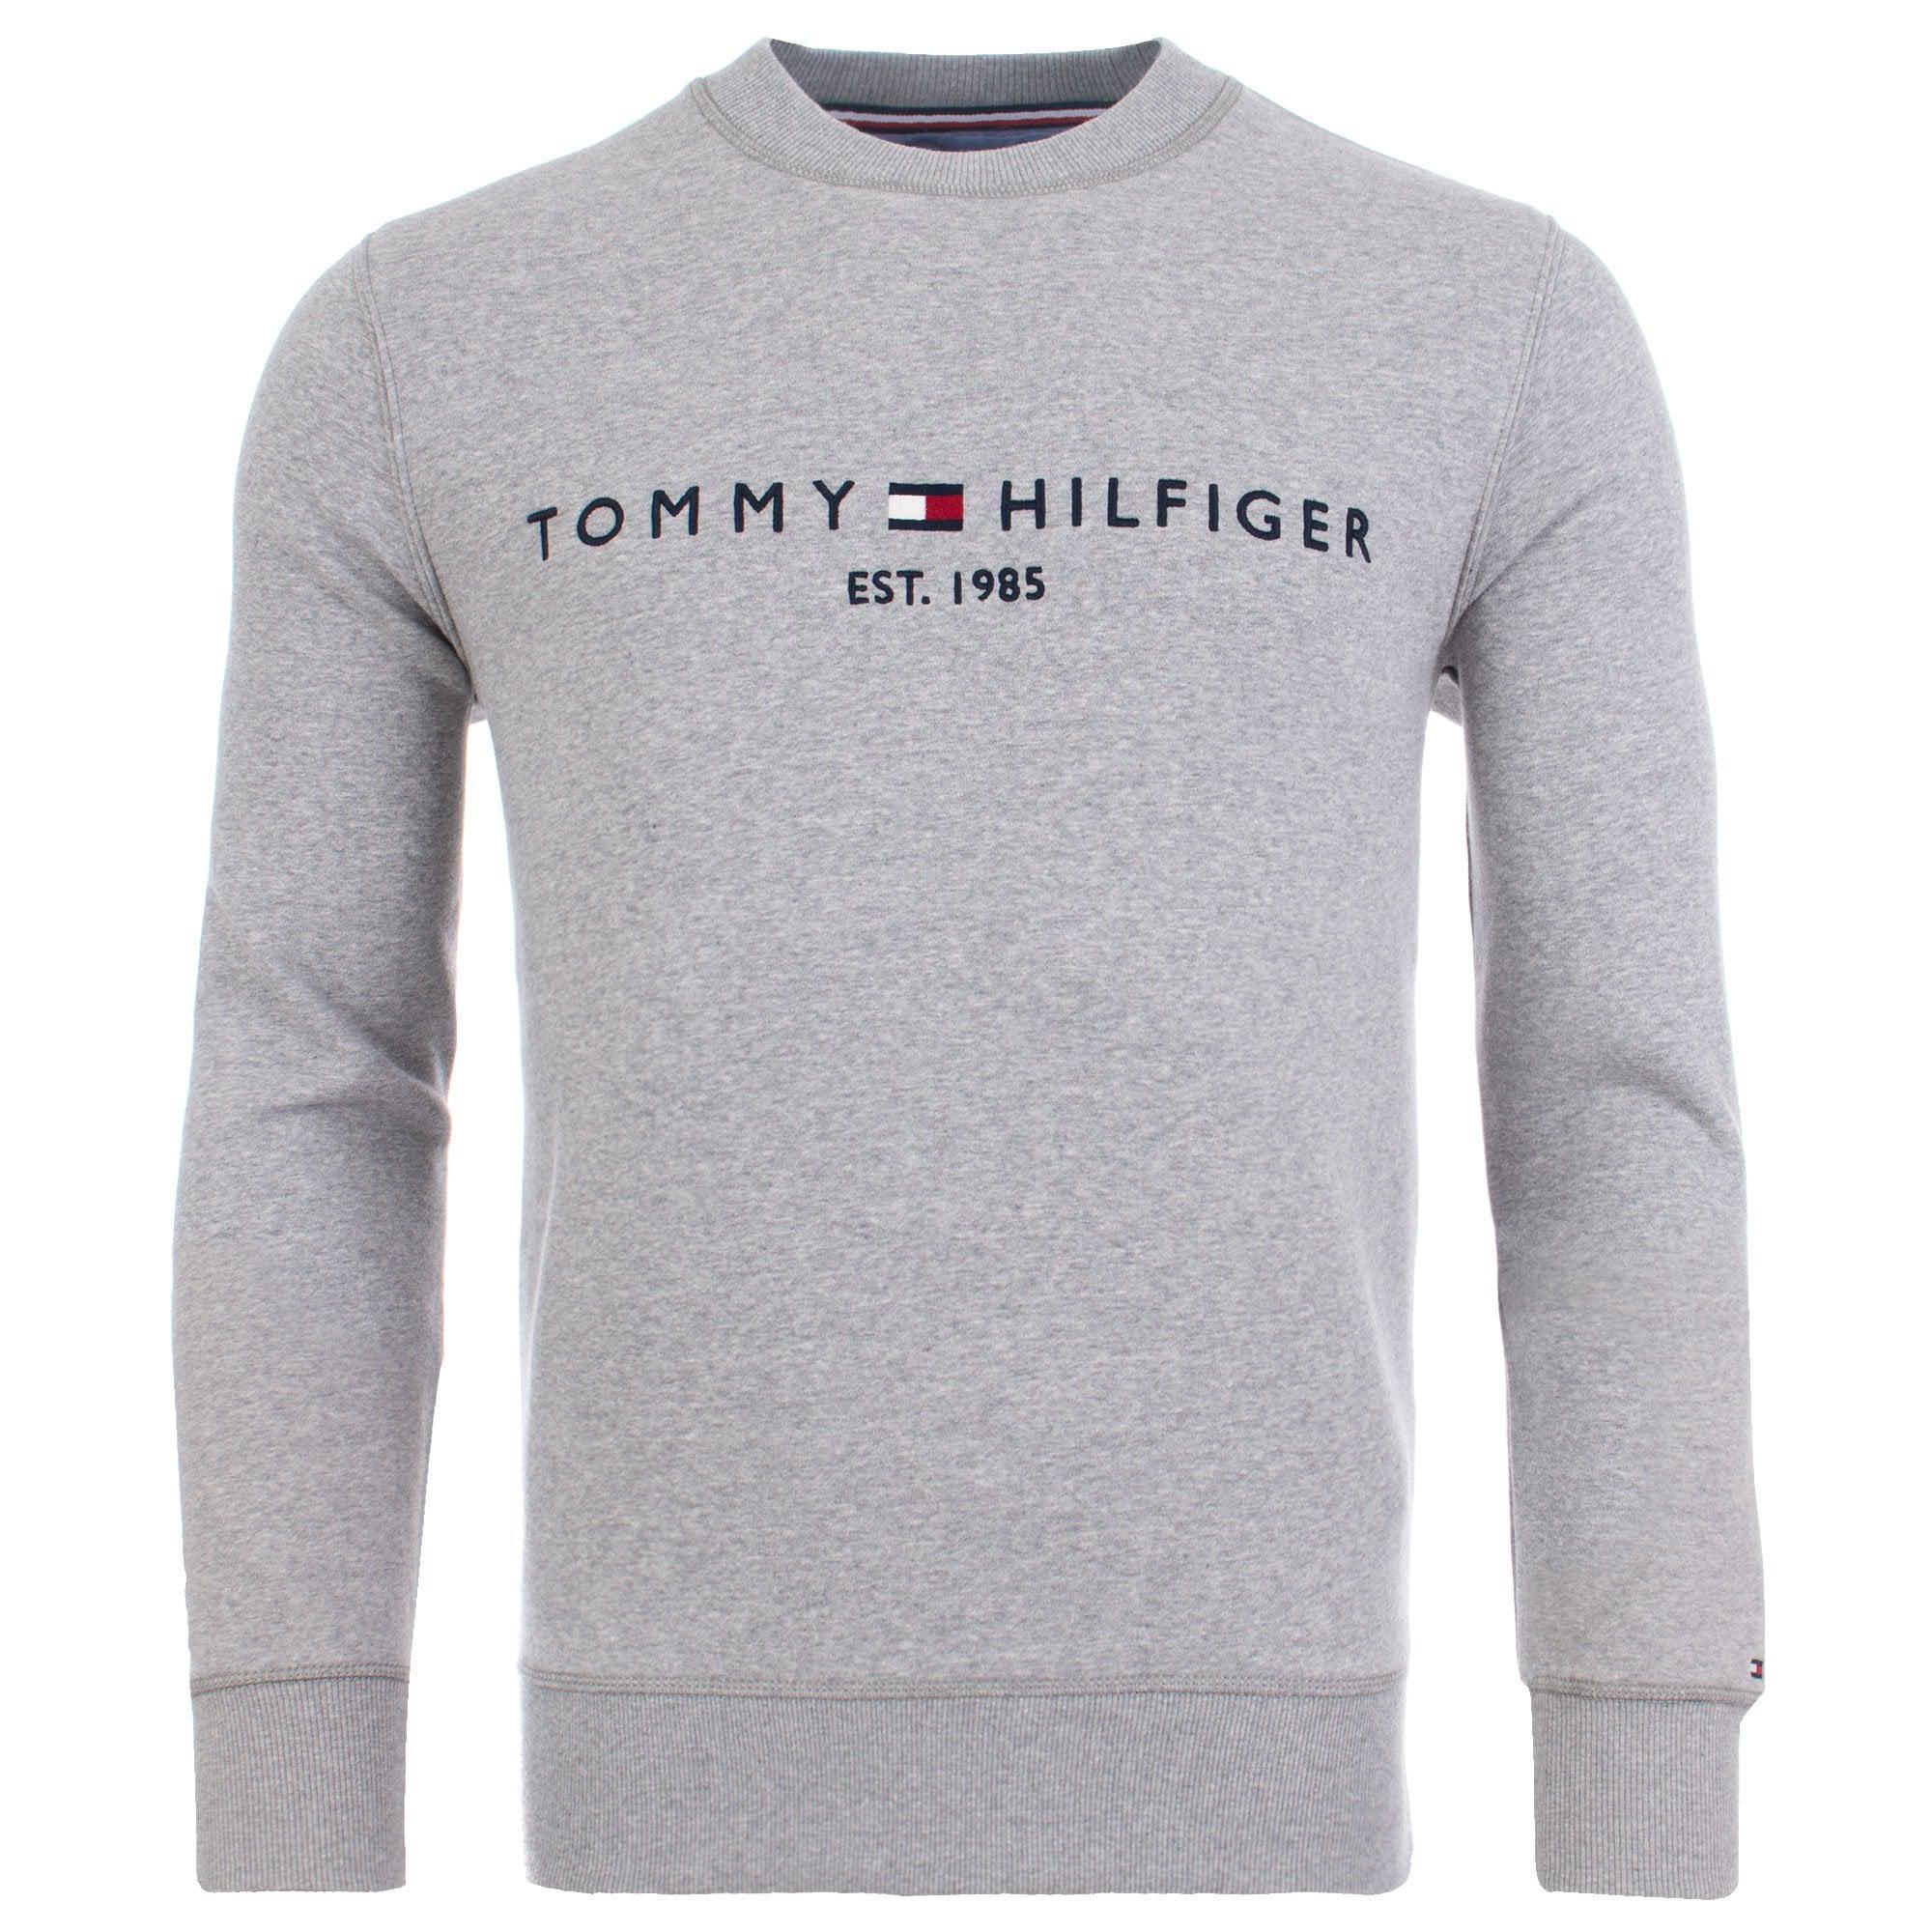 tommy hilfiger grey sweatshirt